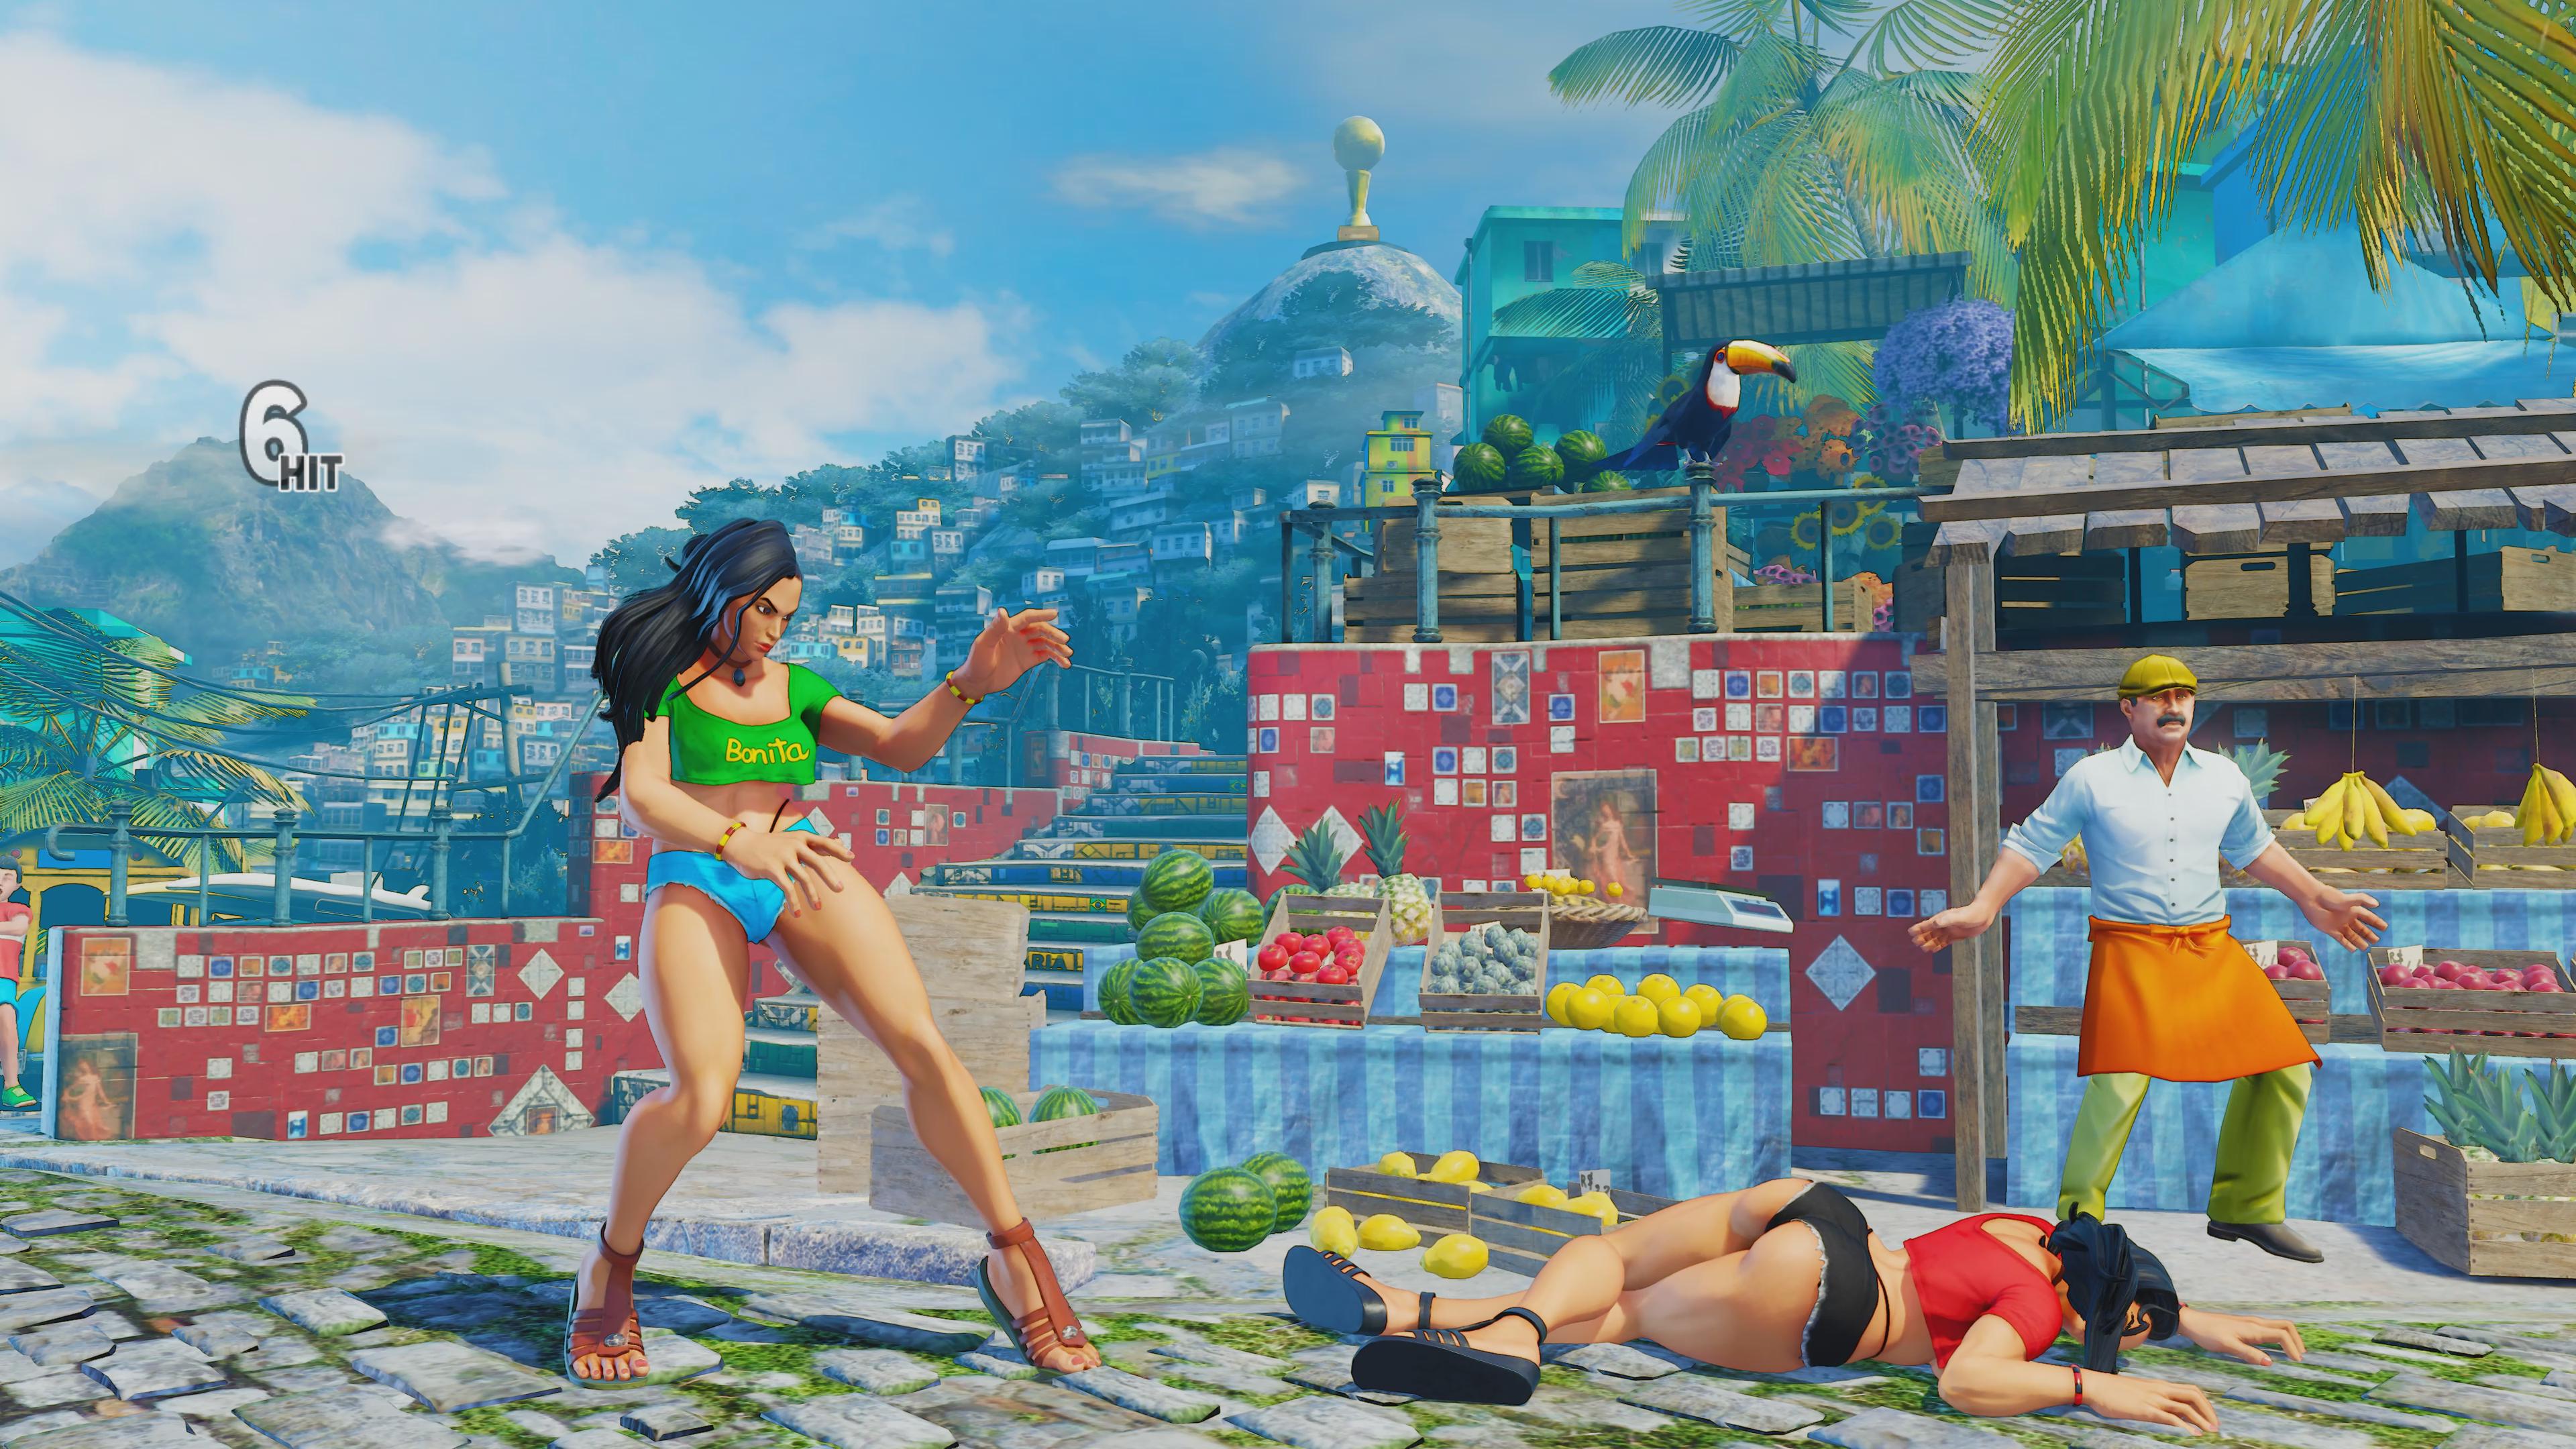 Opinião: As roupas de Laura em Street Fighter V